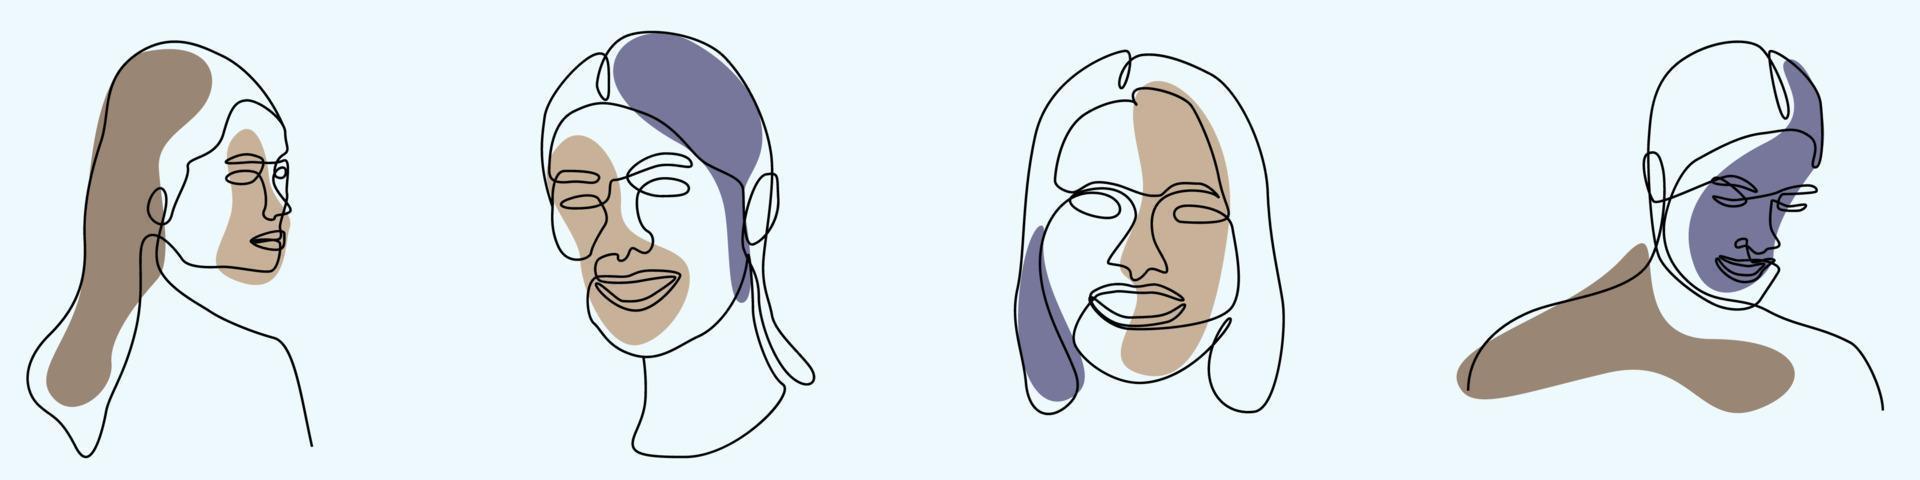 dibujo continuo a mano de una línea de arte de línea de cara de mujer femenino vector